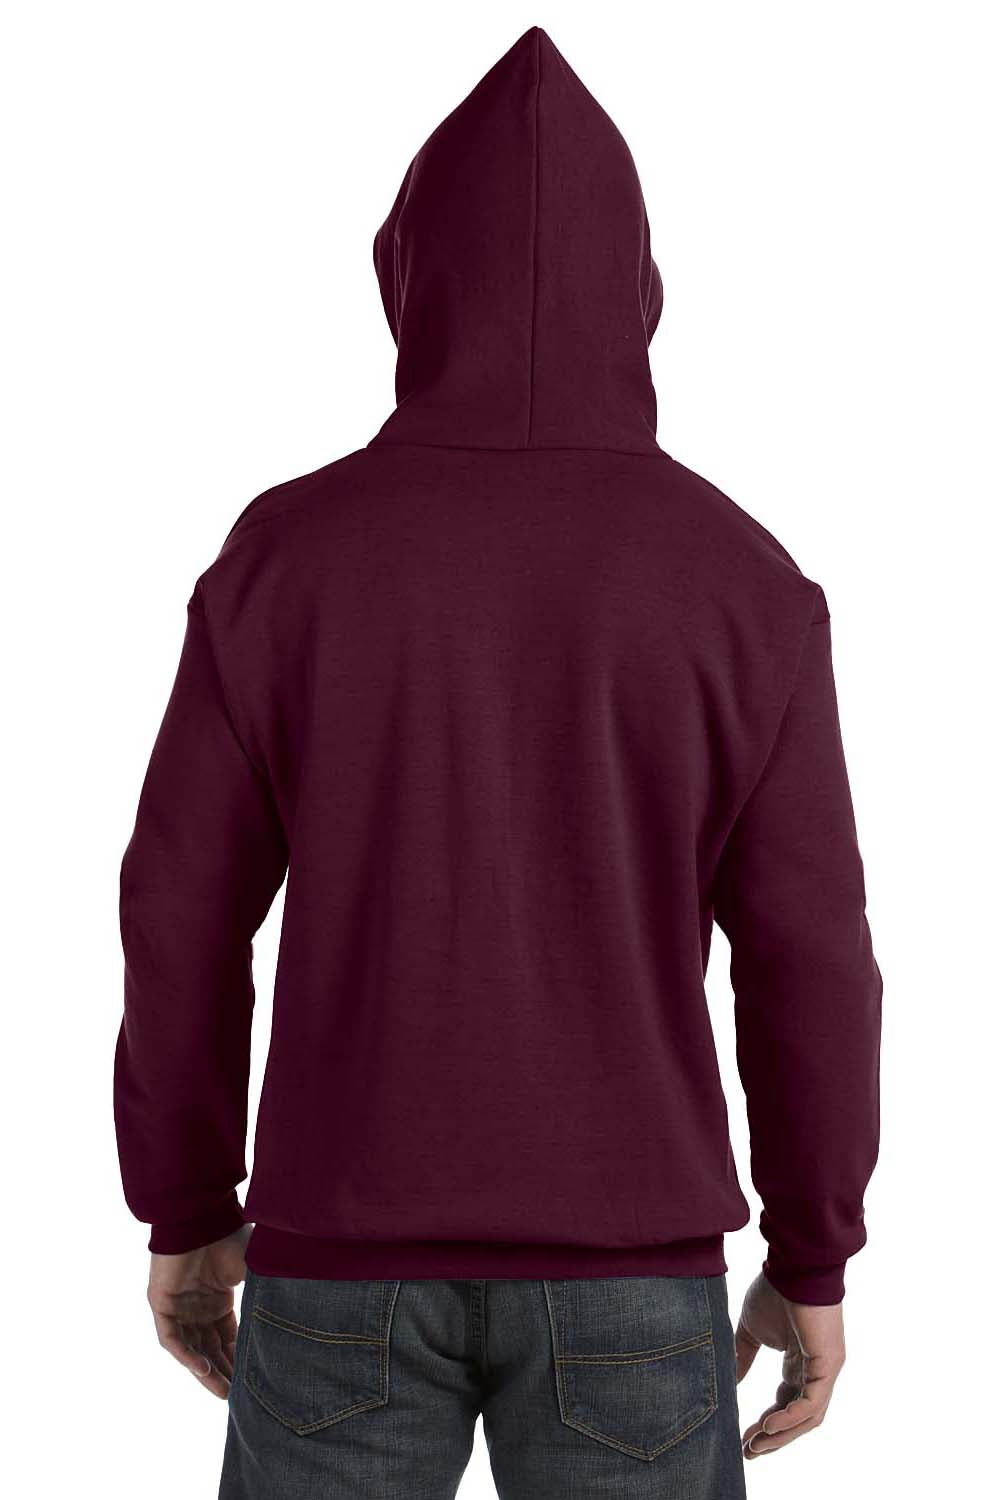 Hanes P170 Mens EcoSmart Print Pro XP Hooded Sweatshirt Hoodie Maroon Back